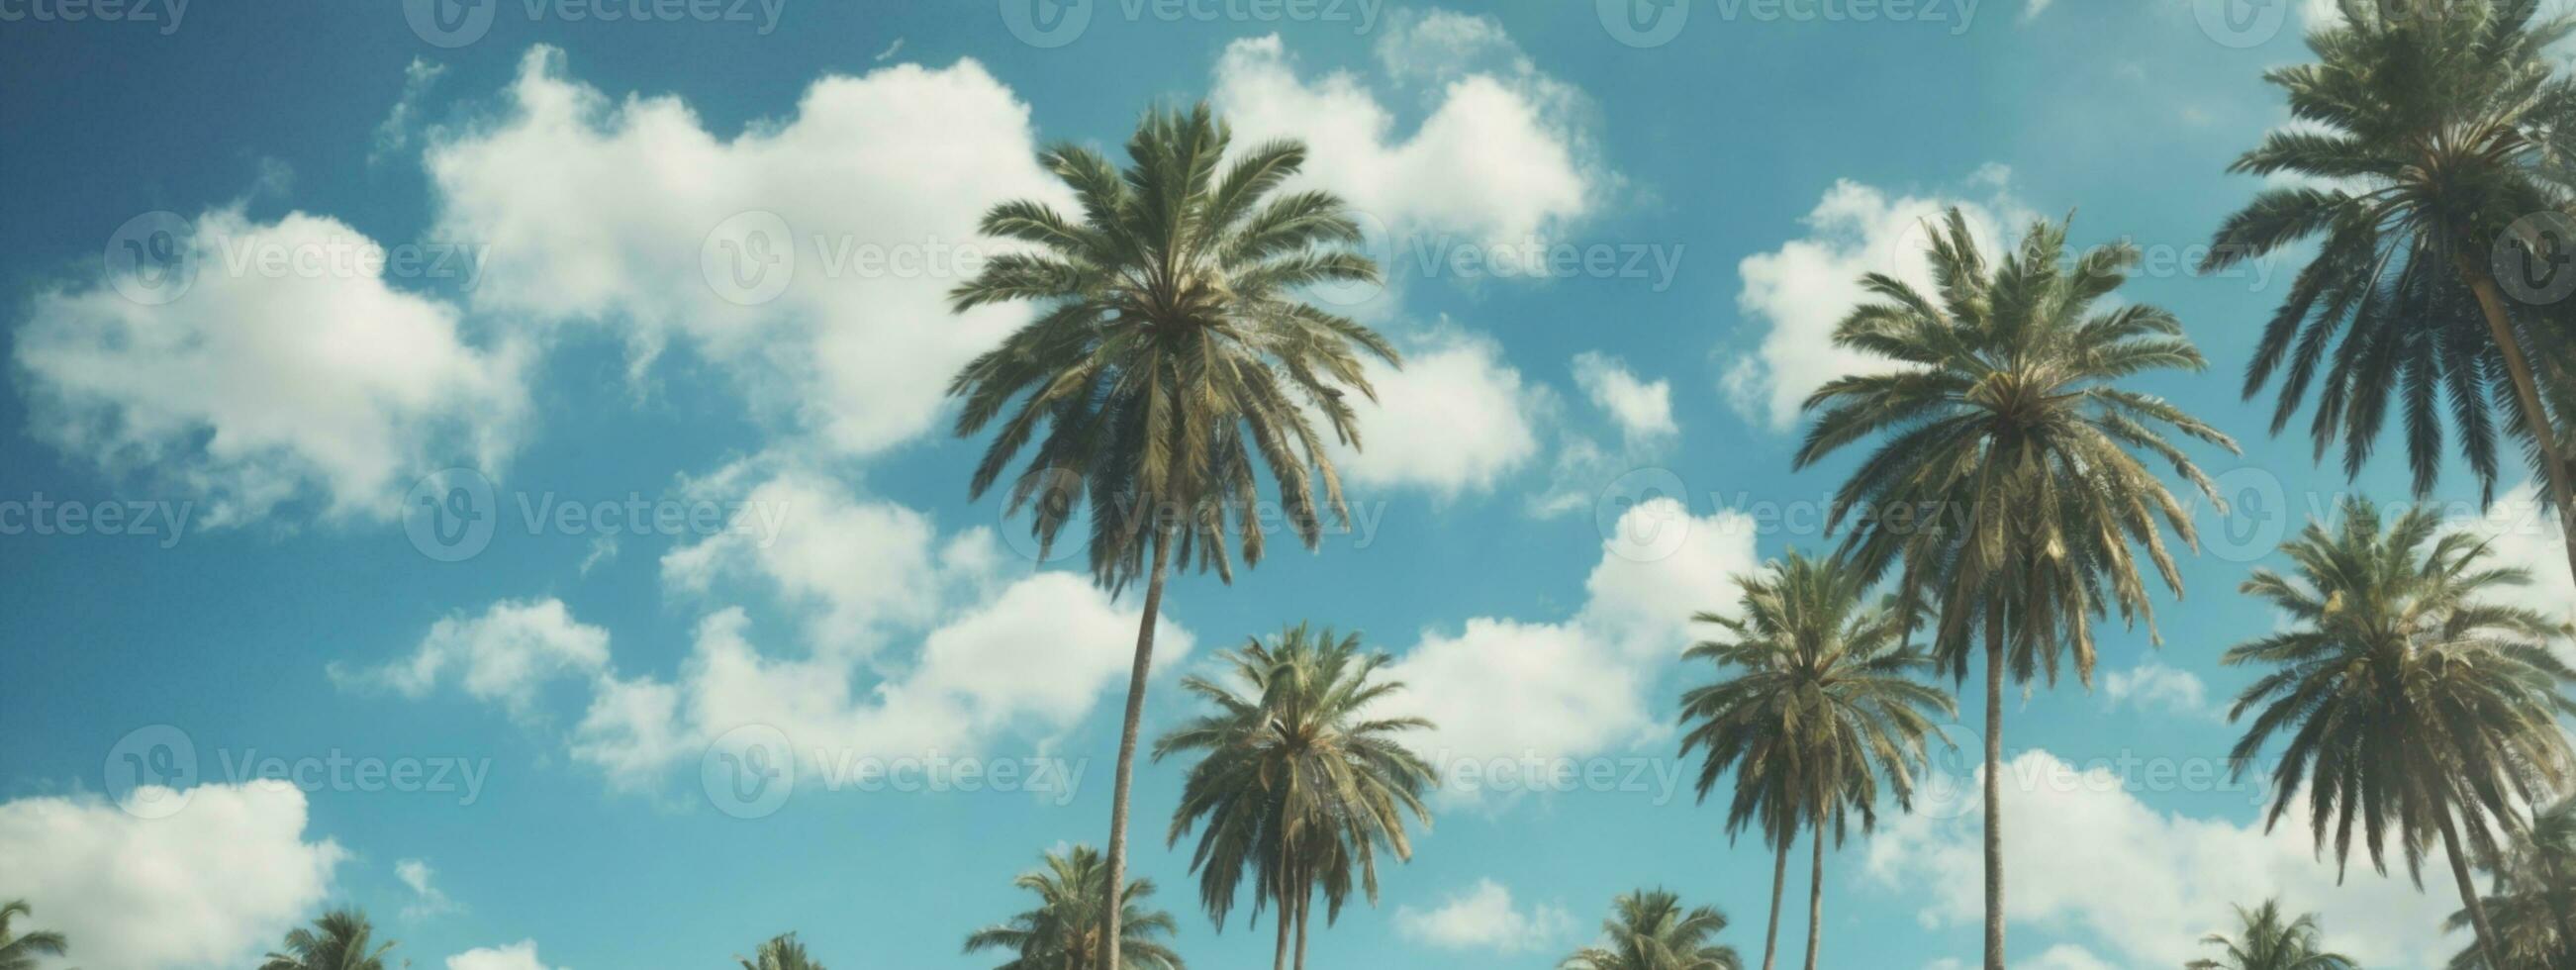 blauw lucht en palm bomen visie van onderstaand, wijnoogst stijl, tropisch strand en zomer achtergrond, reizen concept. ai gegenereerd foto